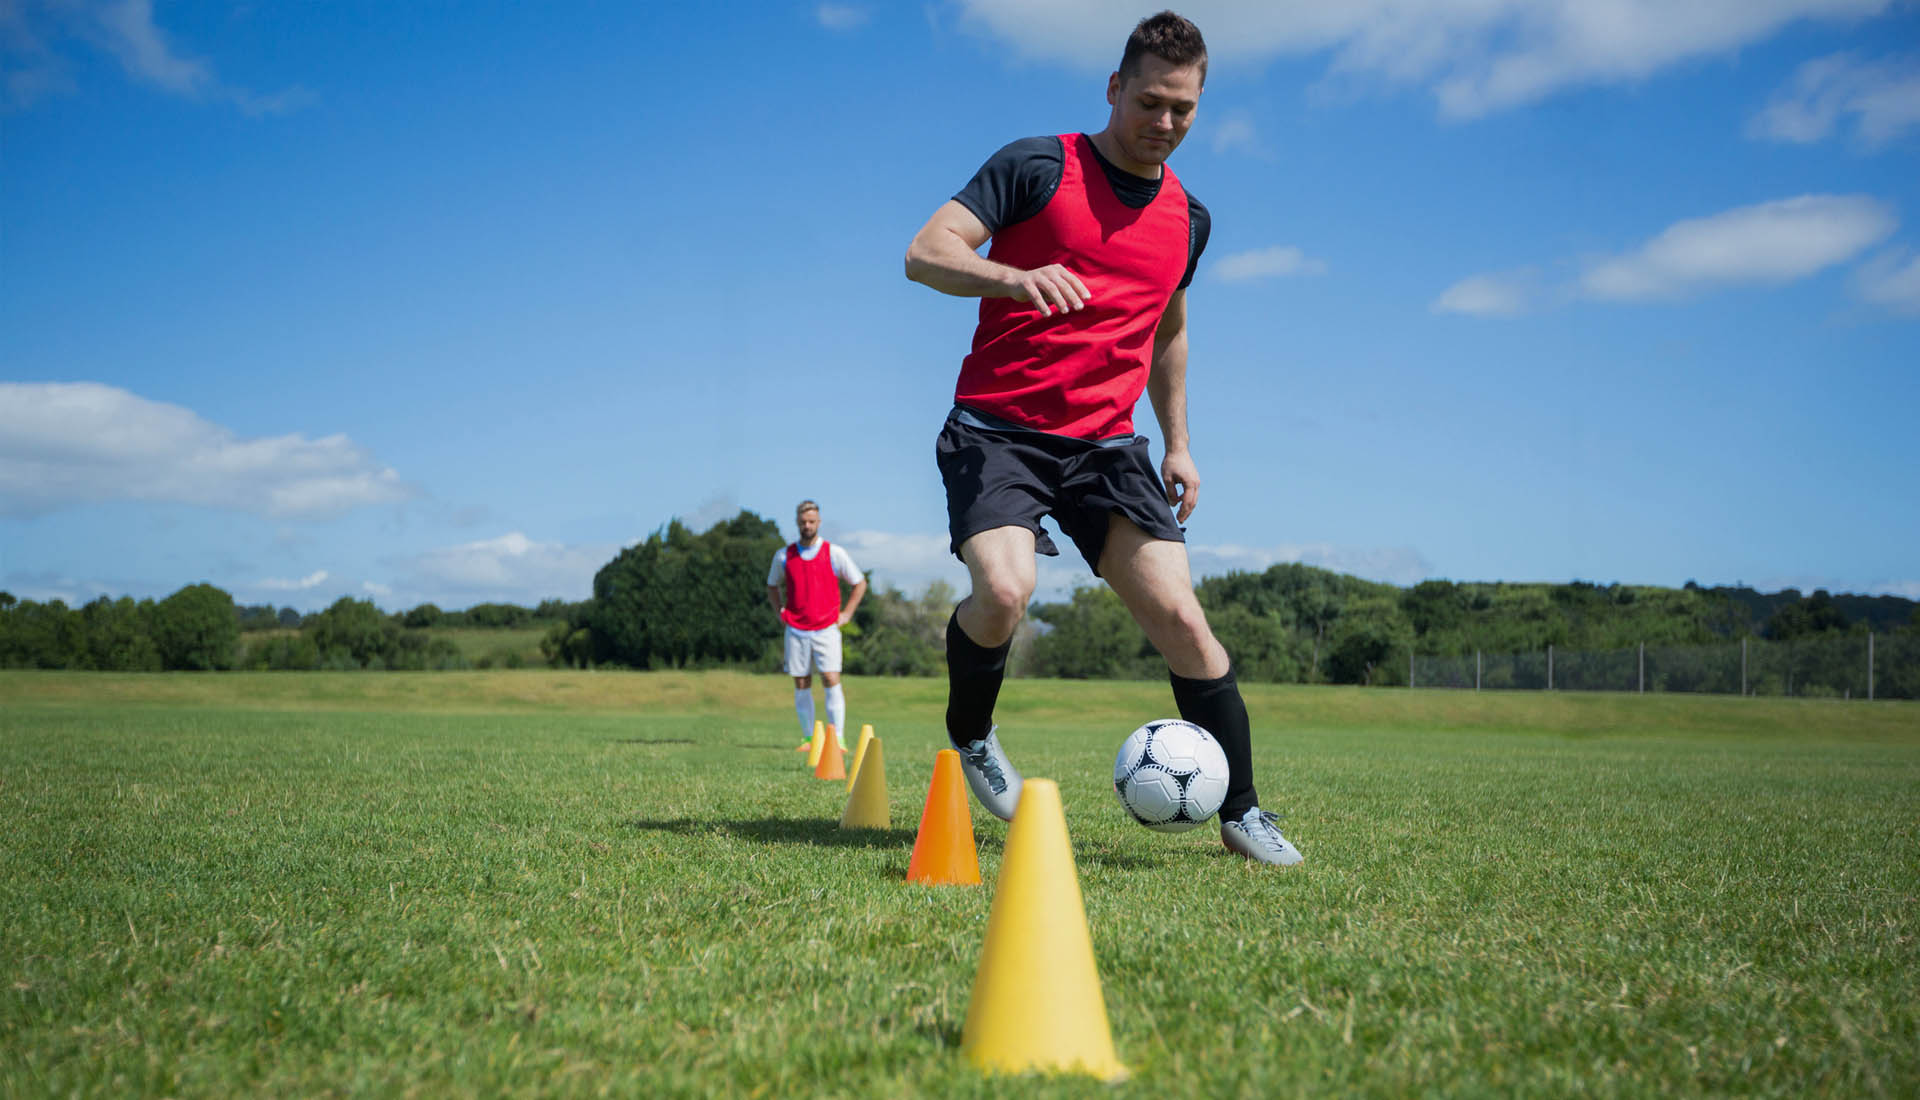 Hướng dẫn luyện tập và phát triển kỹ năng rê bóng | Bóng đá chuyên nghiệp